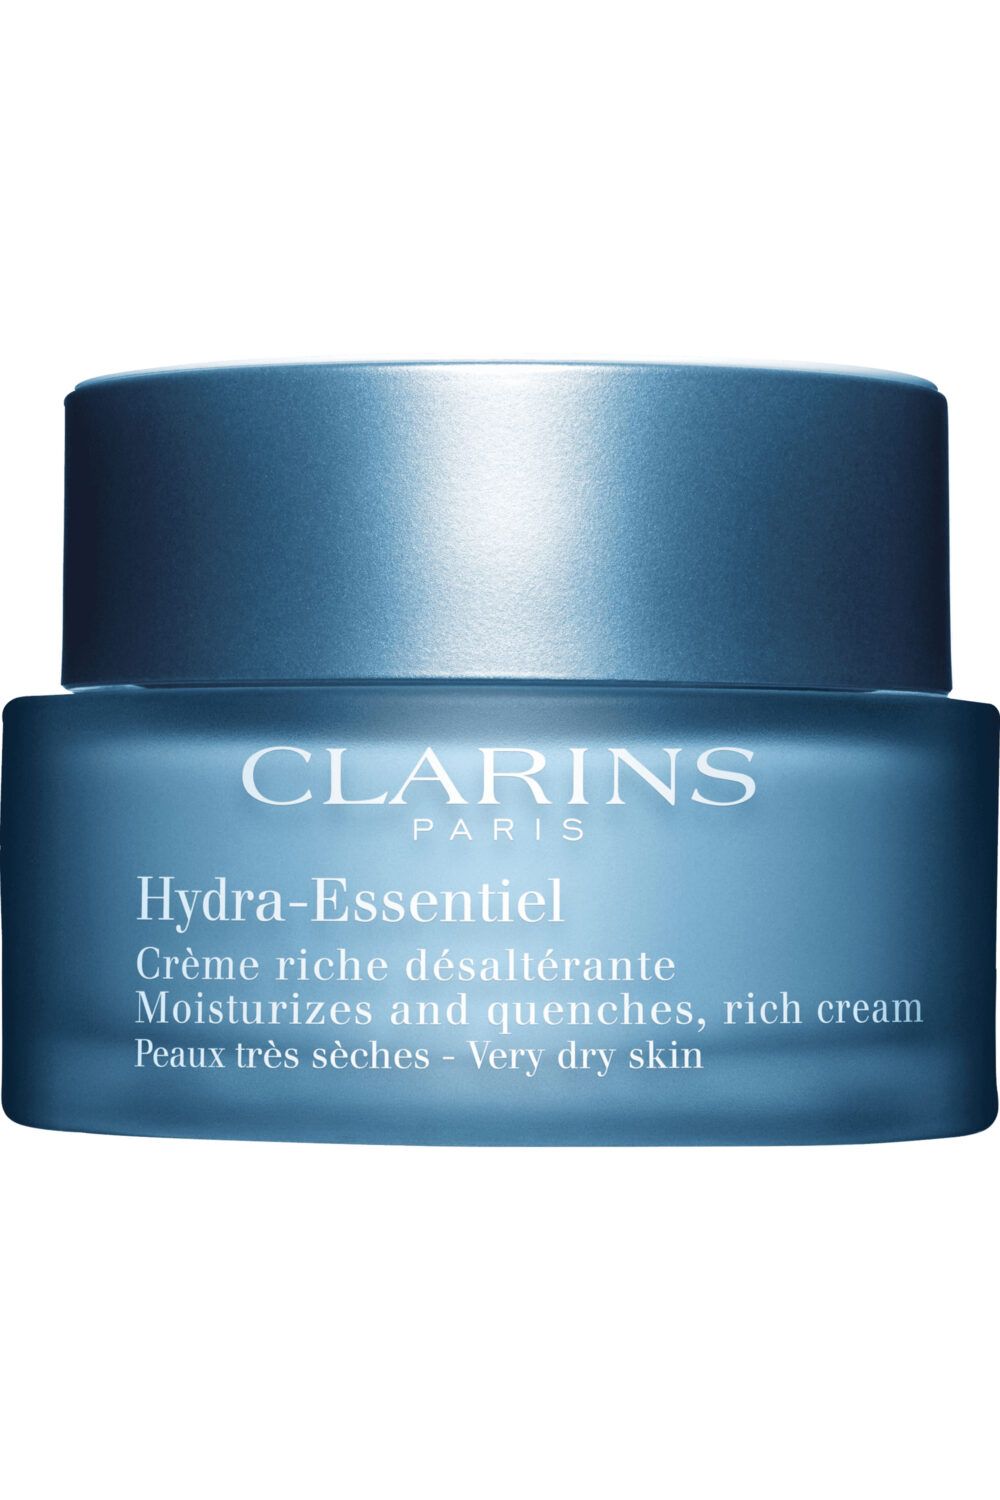 Clarins - Crème riche désaltérante pour peaux très sèches Hydra-Essentiel